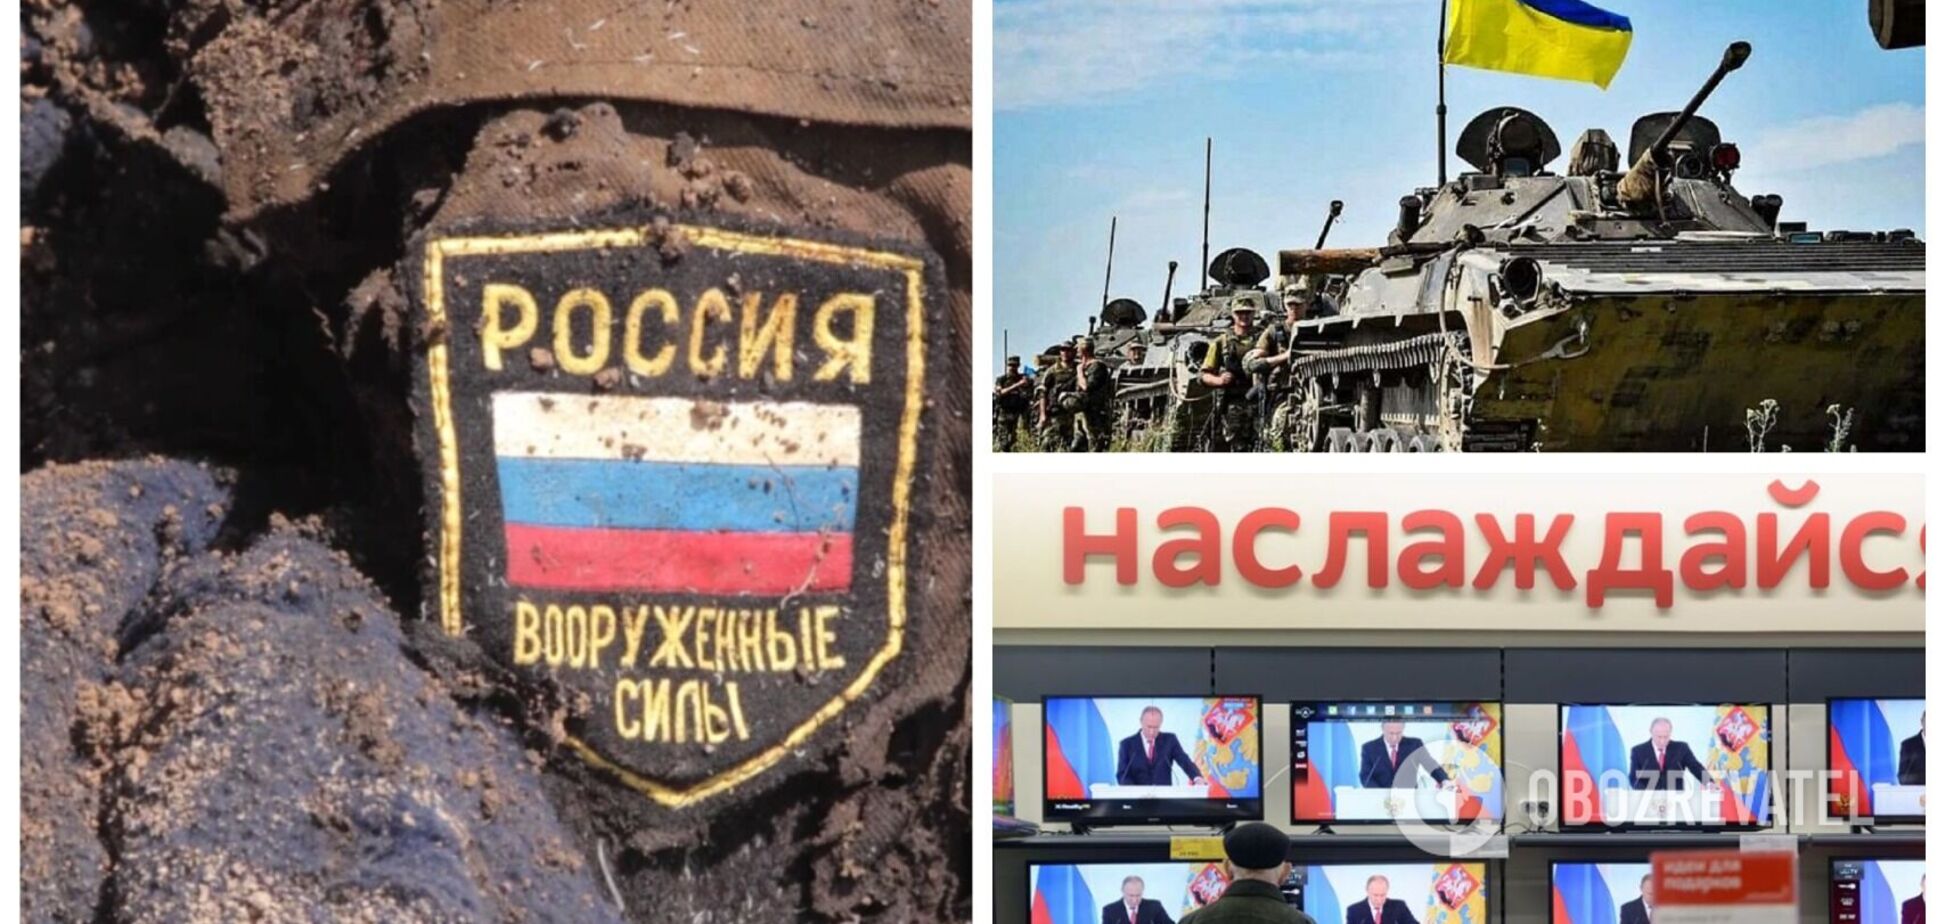 Теперь кричат о позоре: в сети сравнили риторику пропагандистов Путина 24 февраля и 11 сентября. Фото